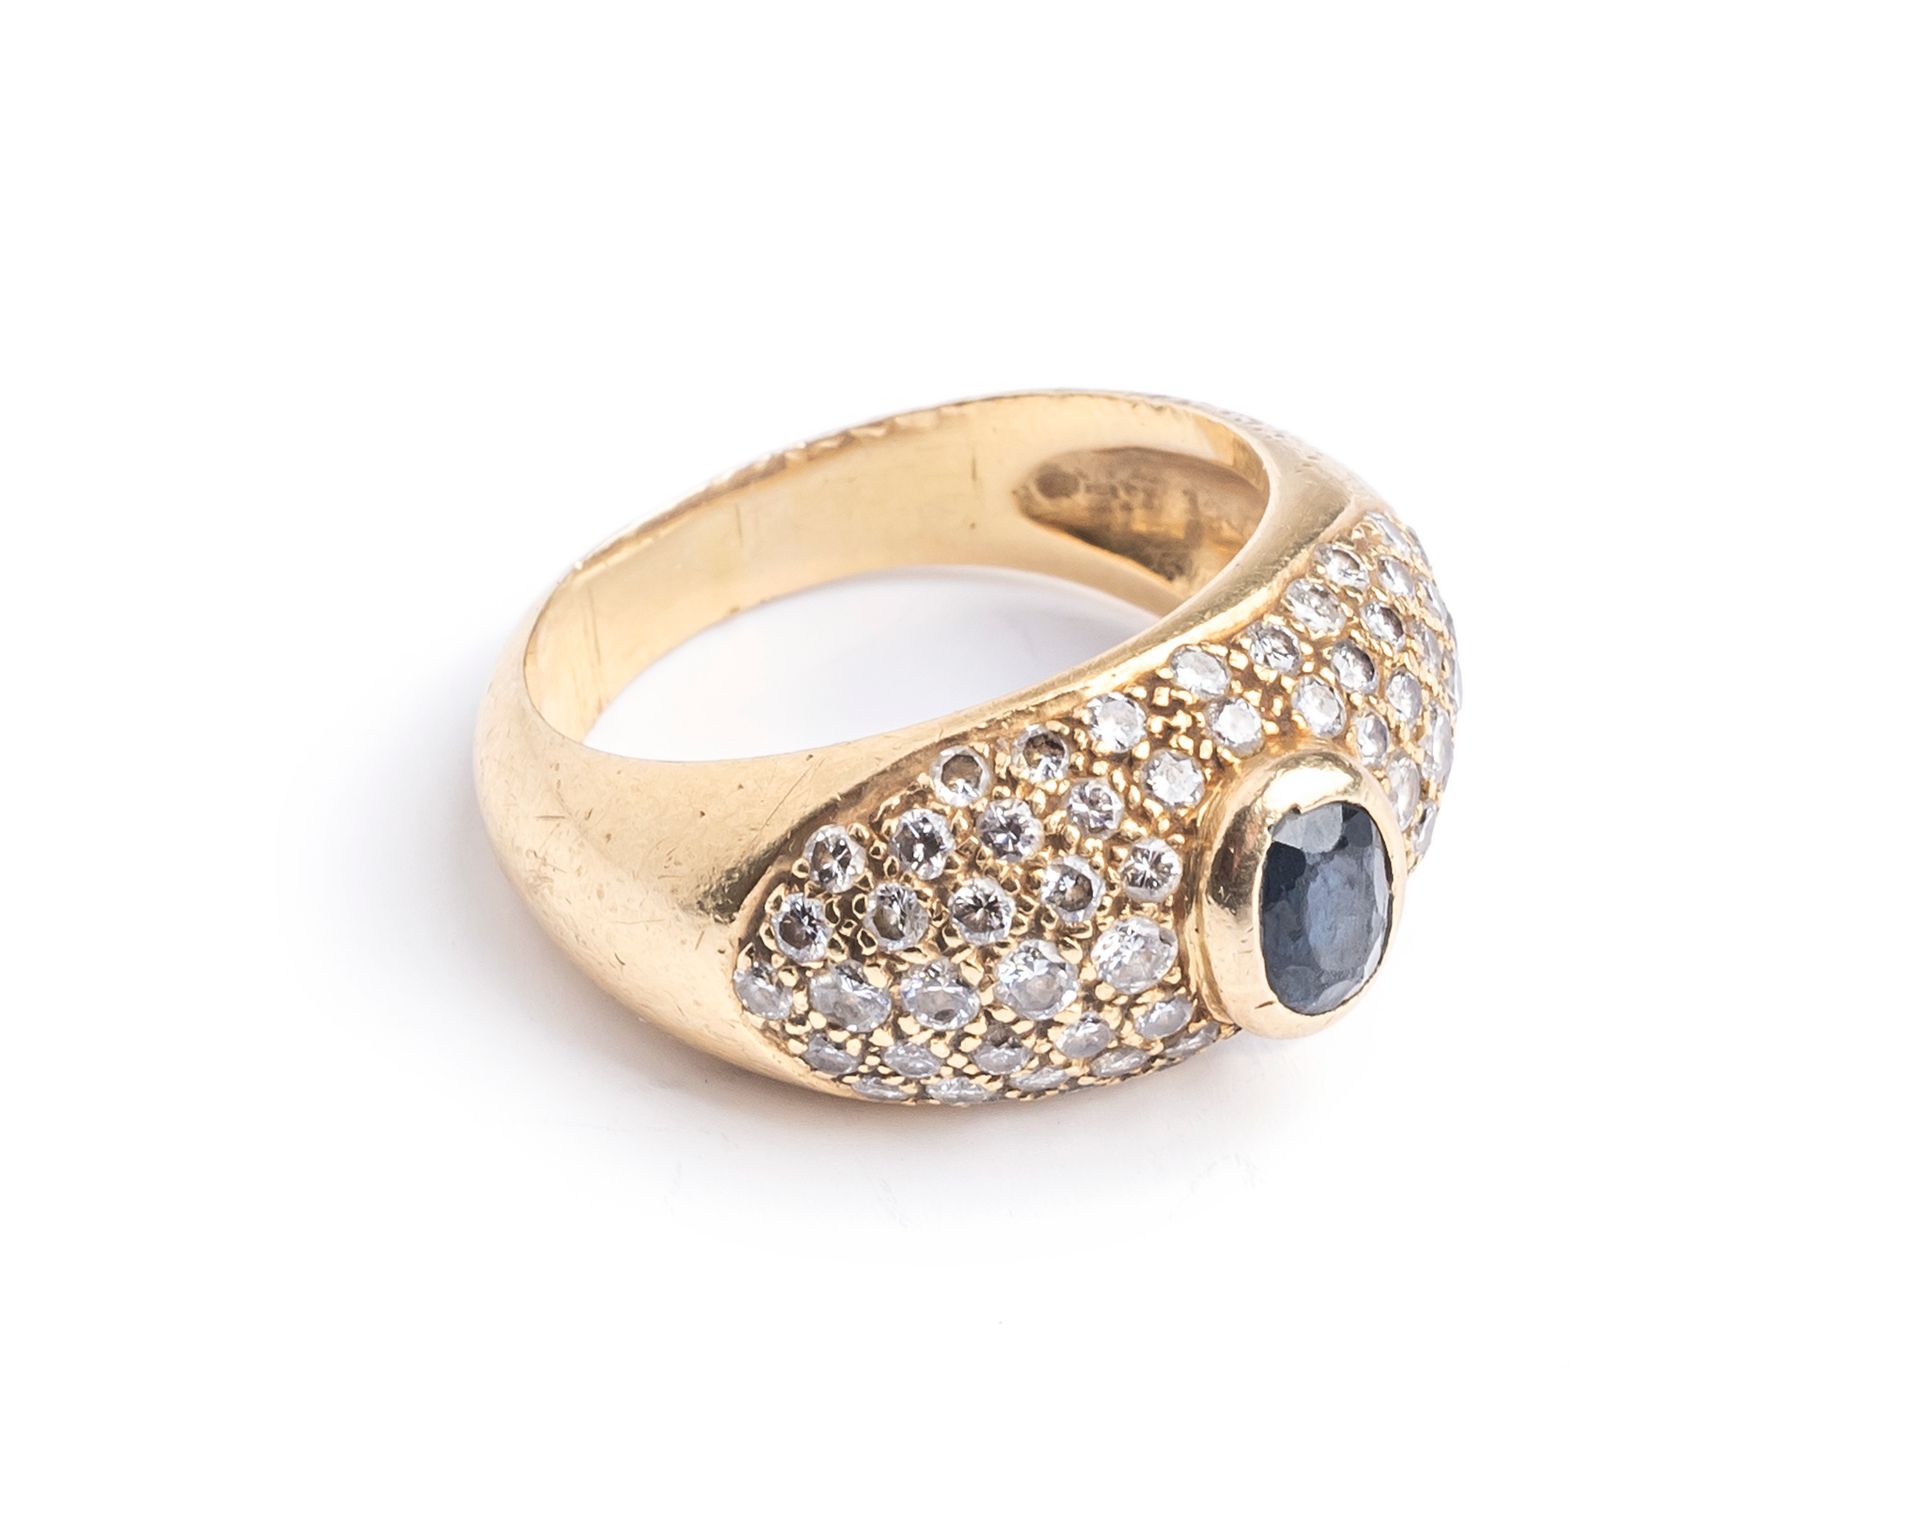 Null 18K（750千分之一）黄金戒指，铺设明亮式切割钻石，并镶嵌有一颗椭圆形刻面蓝宝石（碎片）。
手指尺寸 : 57
毛重 : 10.1克